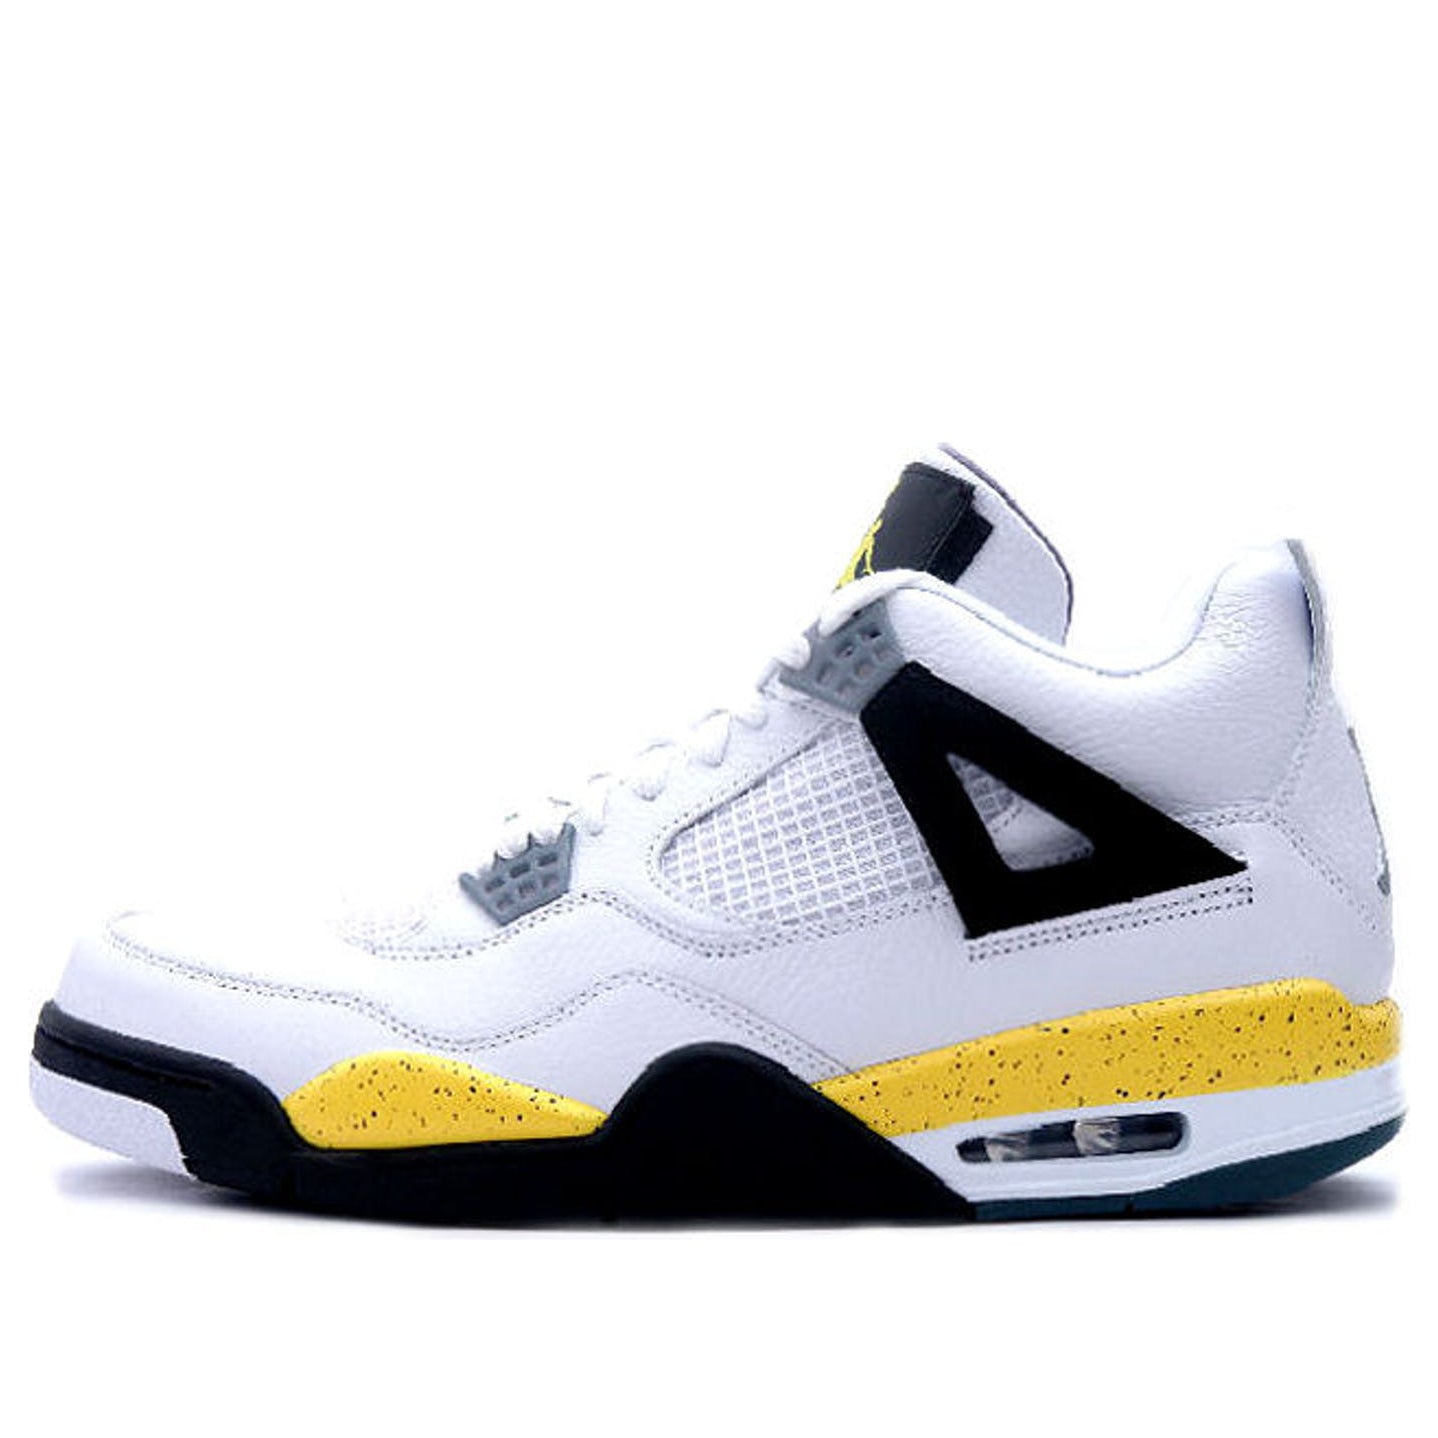 Air Jordan 4 Retro LS 'Tour Yellow' White/Tour Yellow-Dark Blue Grey-Black 314254-171